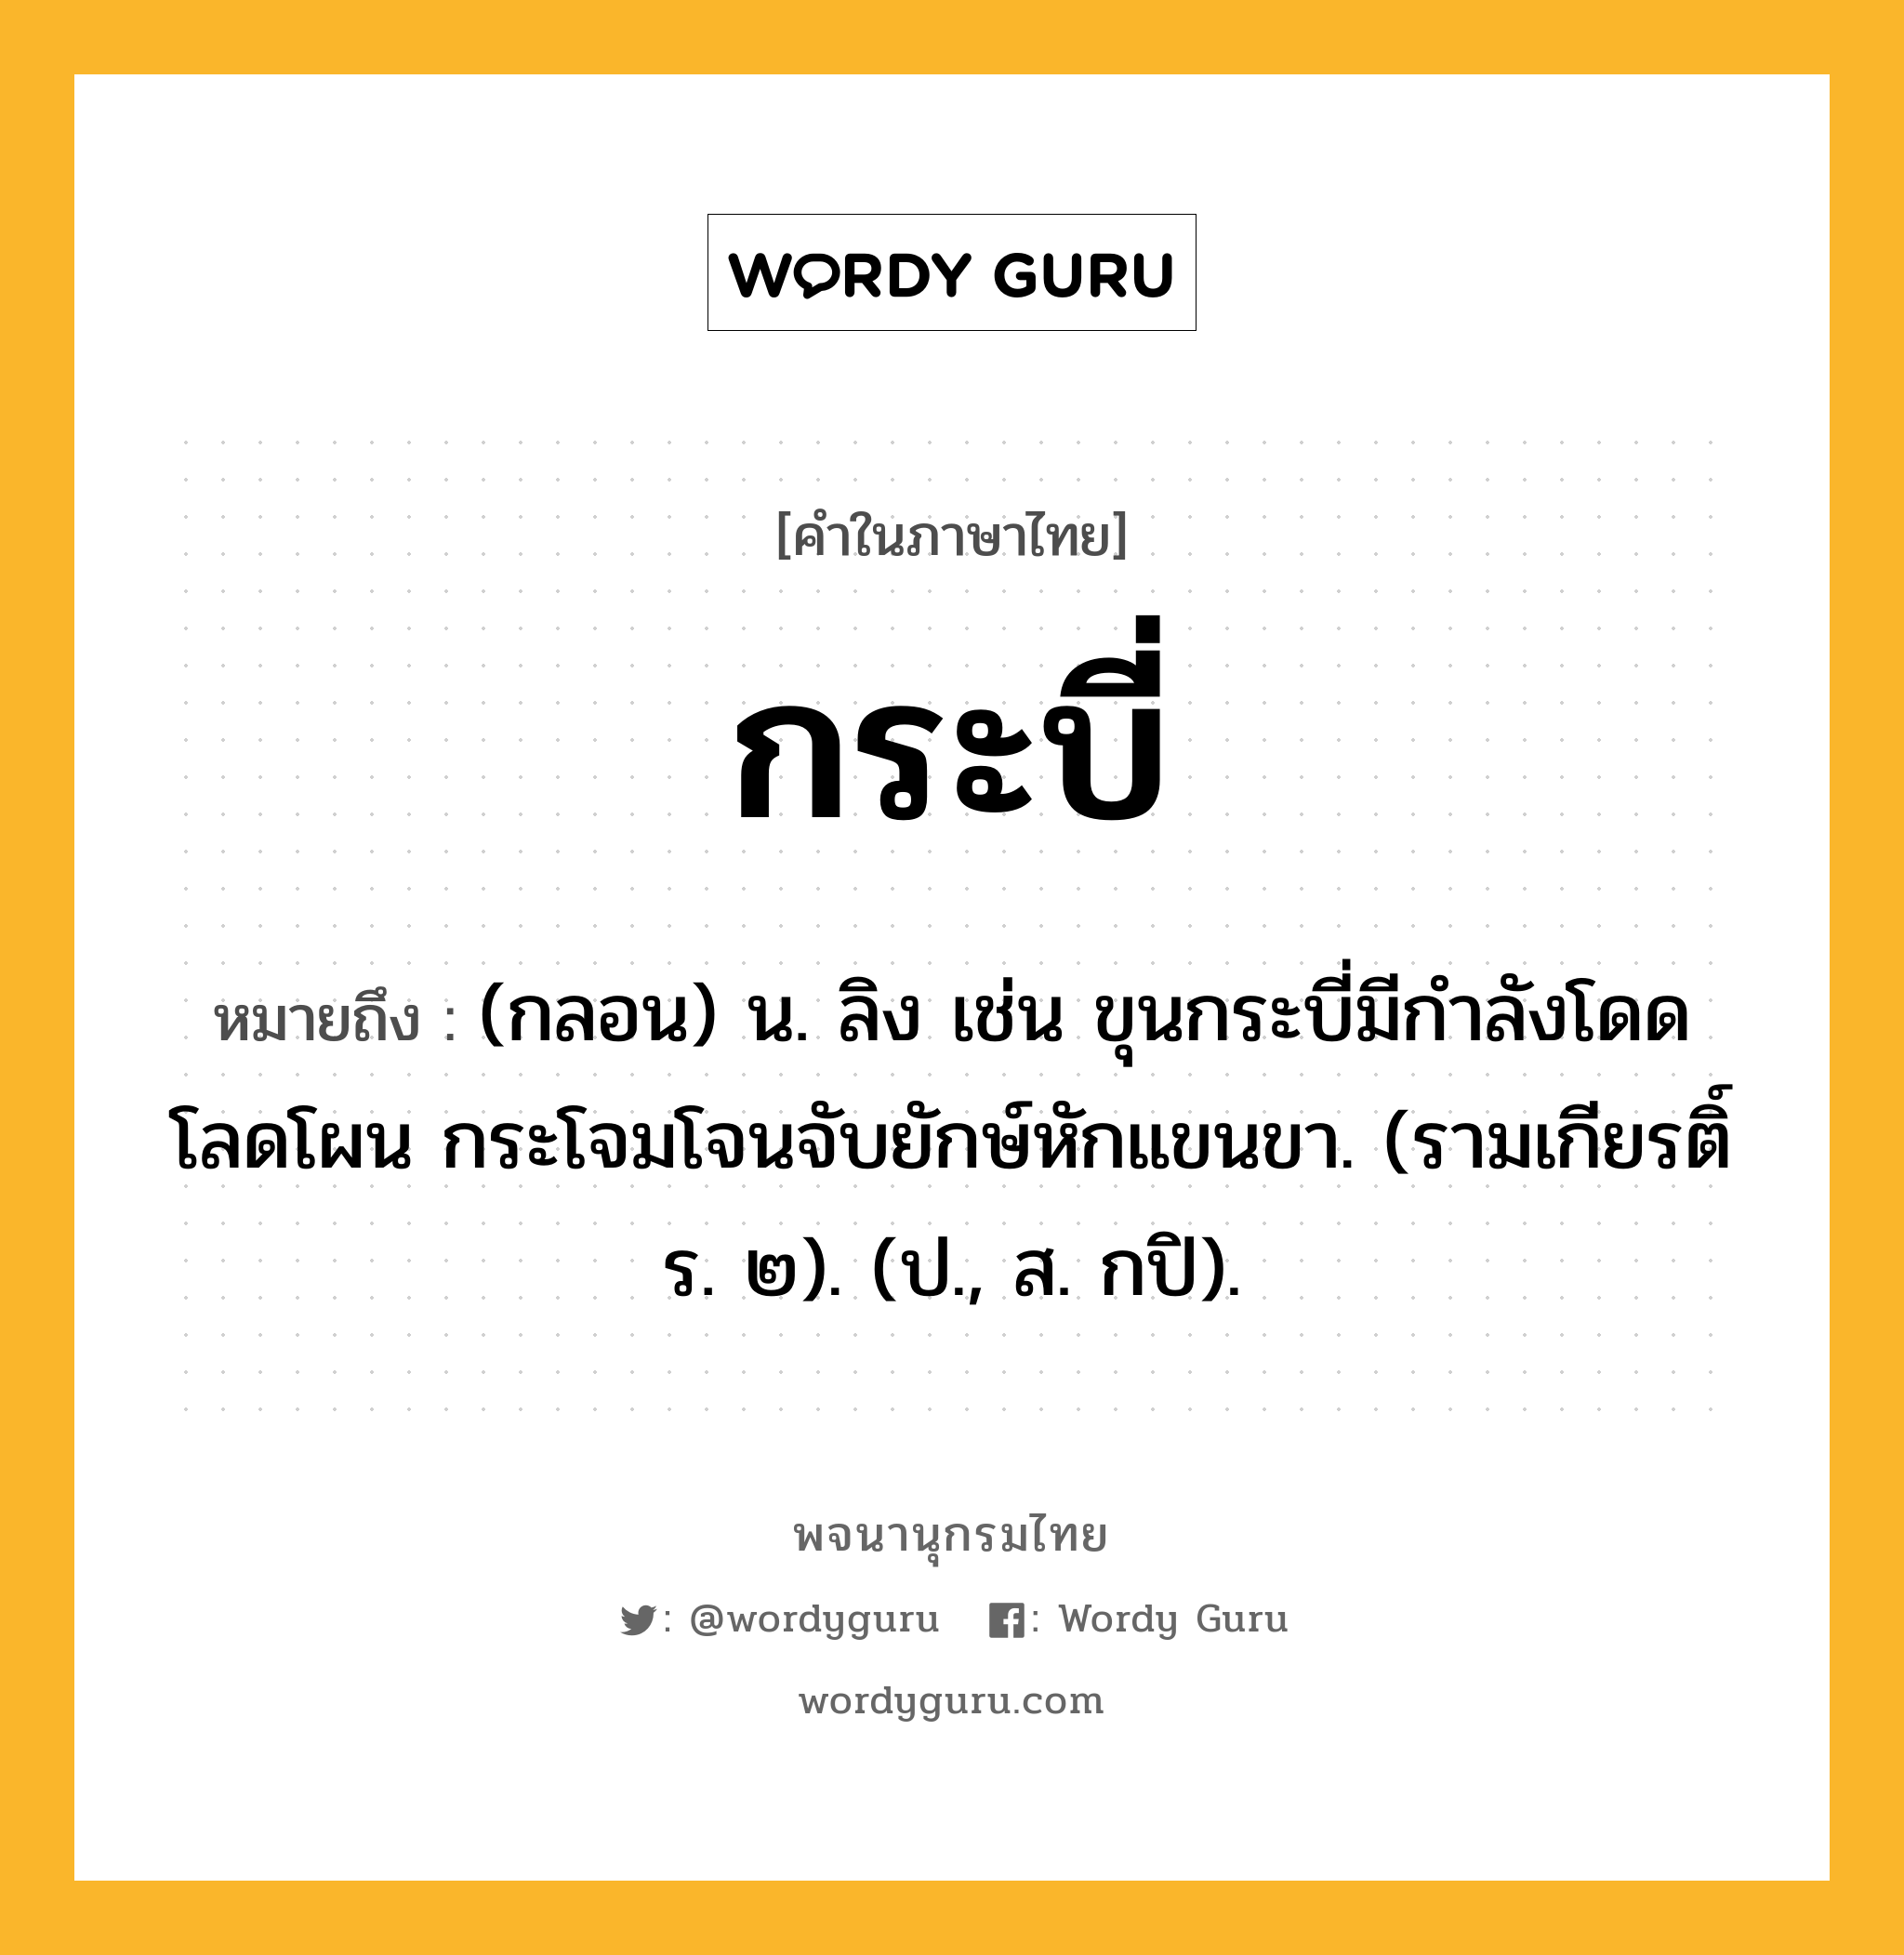 กระบี่ หมายถึงอะไร?, คำในภาษาไทย กระบี่ หมายถึง (กลอน) น. ลิง เช่น ขุนกระบี่มีกำลังโดดโลดโผน กระโจมโจนจับยักษ์หักแขนขา. (รามเกียรติ์ ร. ๒). (ป., ส. กปิ).